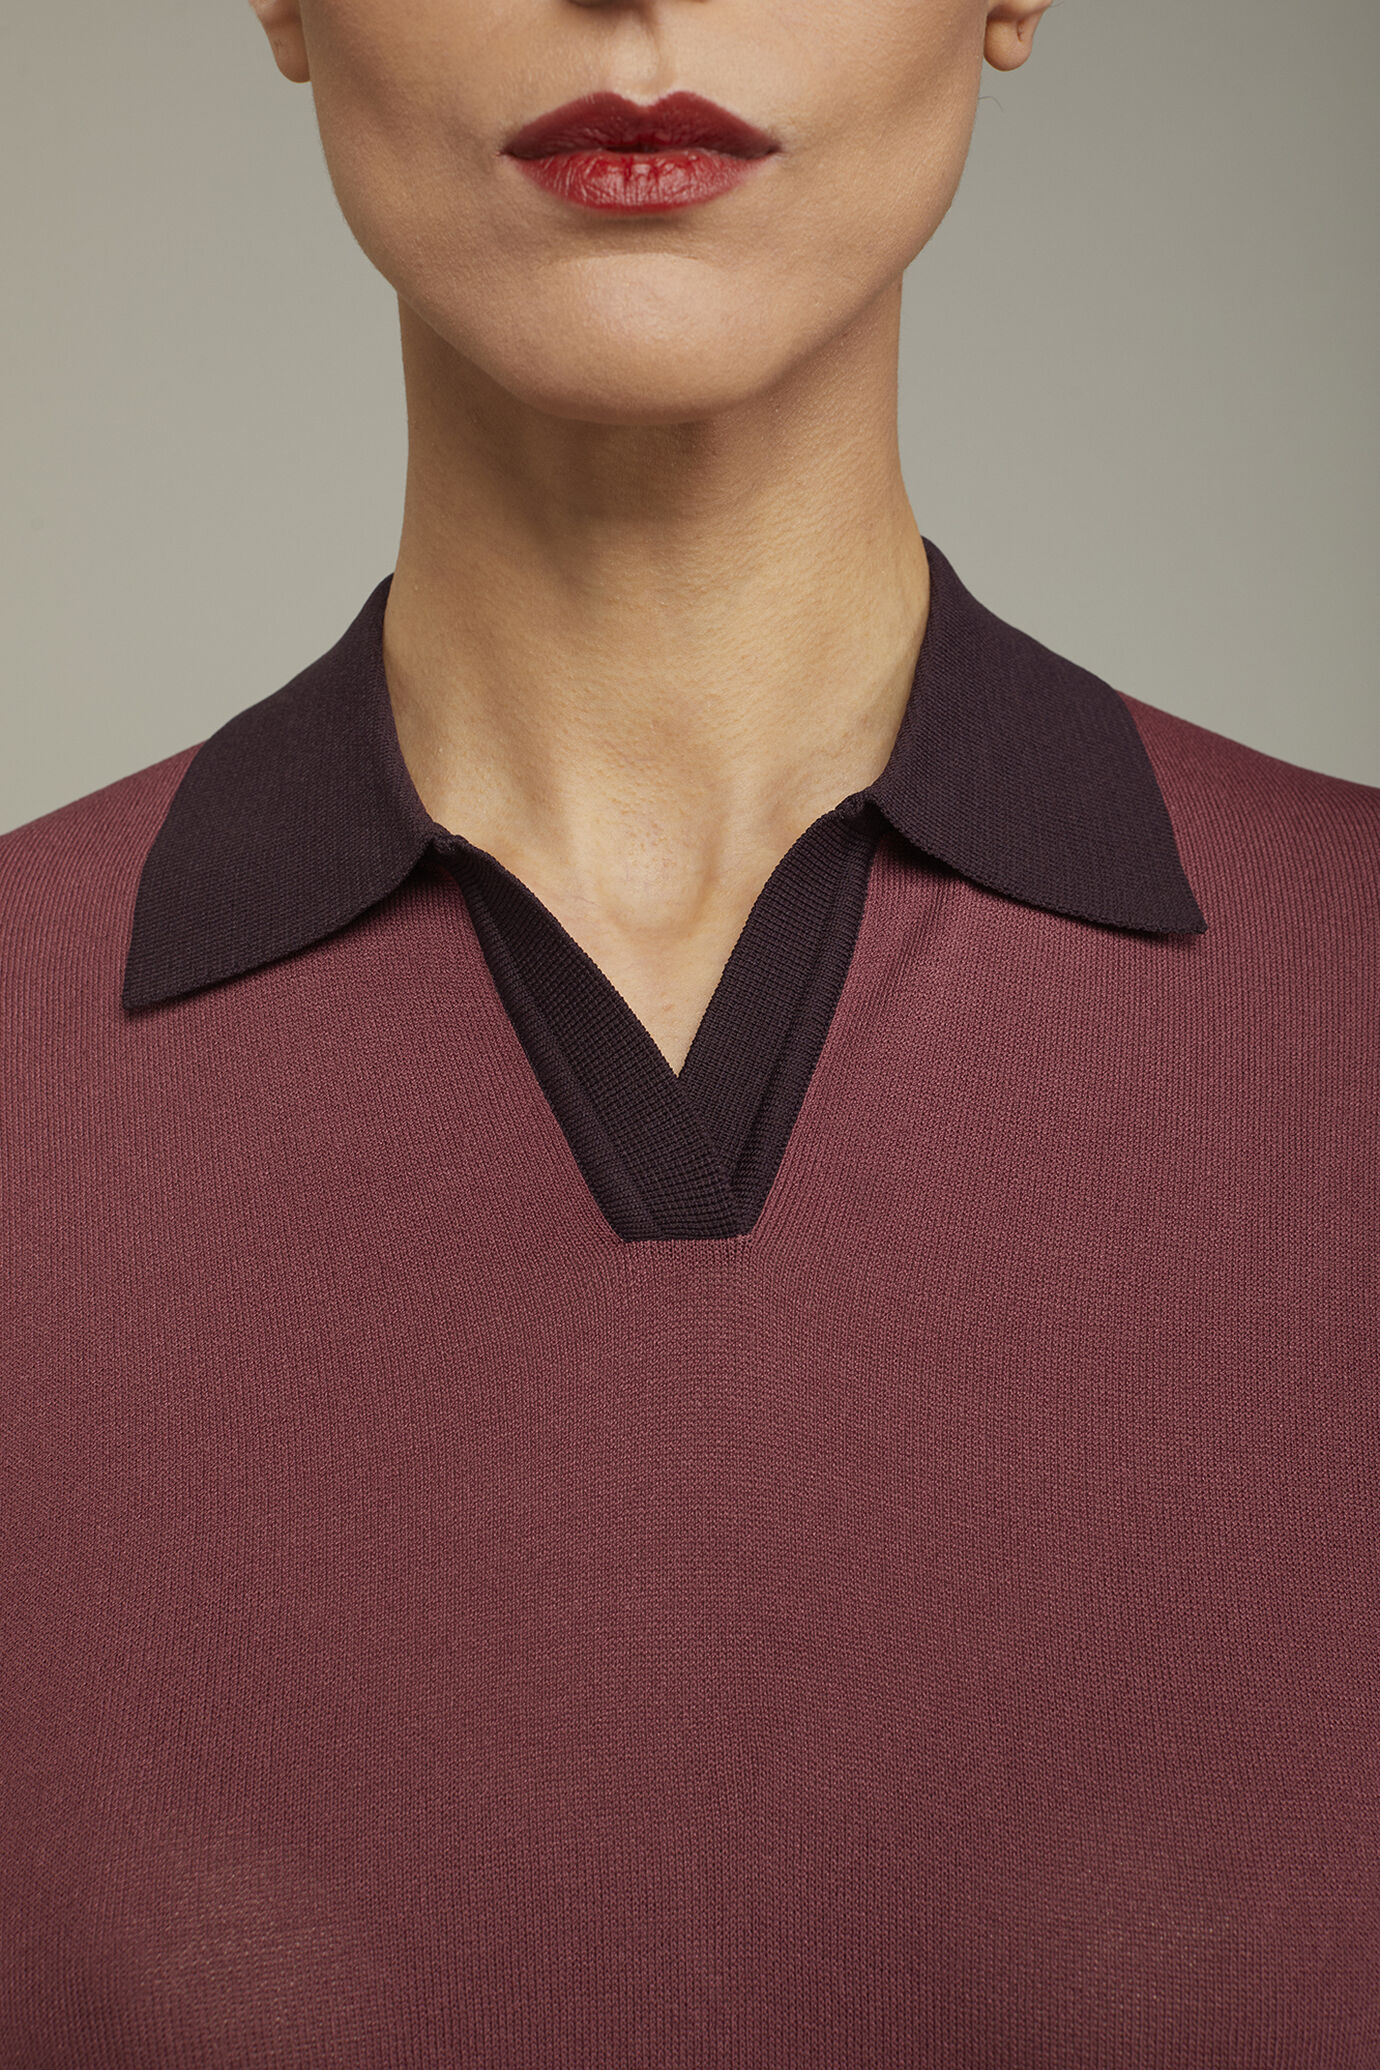 Damen-Poloshirt mit 3/4-Ärmeln in normaler Passform image number 3